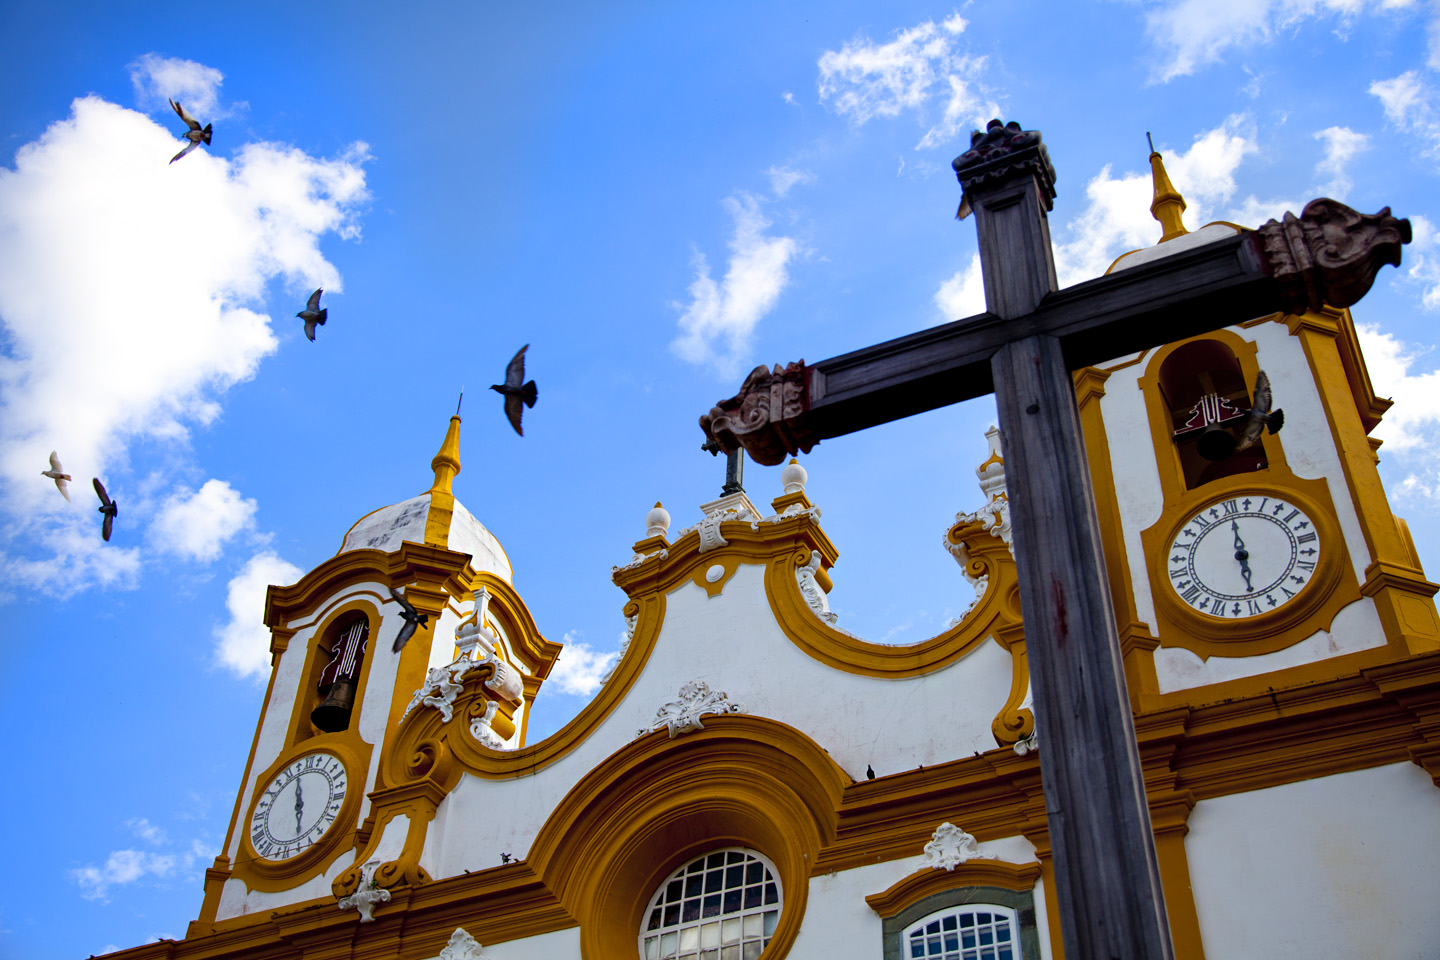 A robustez e as cores do barroco marcam a fachada da Igreja Matriz de Santo Antônio, em Tiradentes, Minas Gerais (Foto: Antonio Thomás Koenigkam Oliveira)